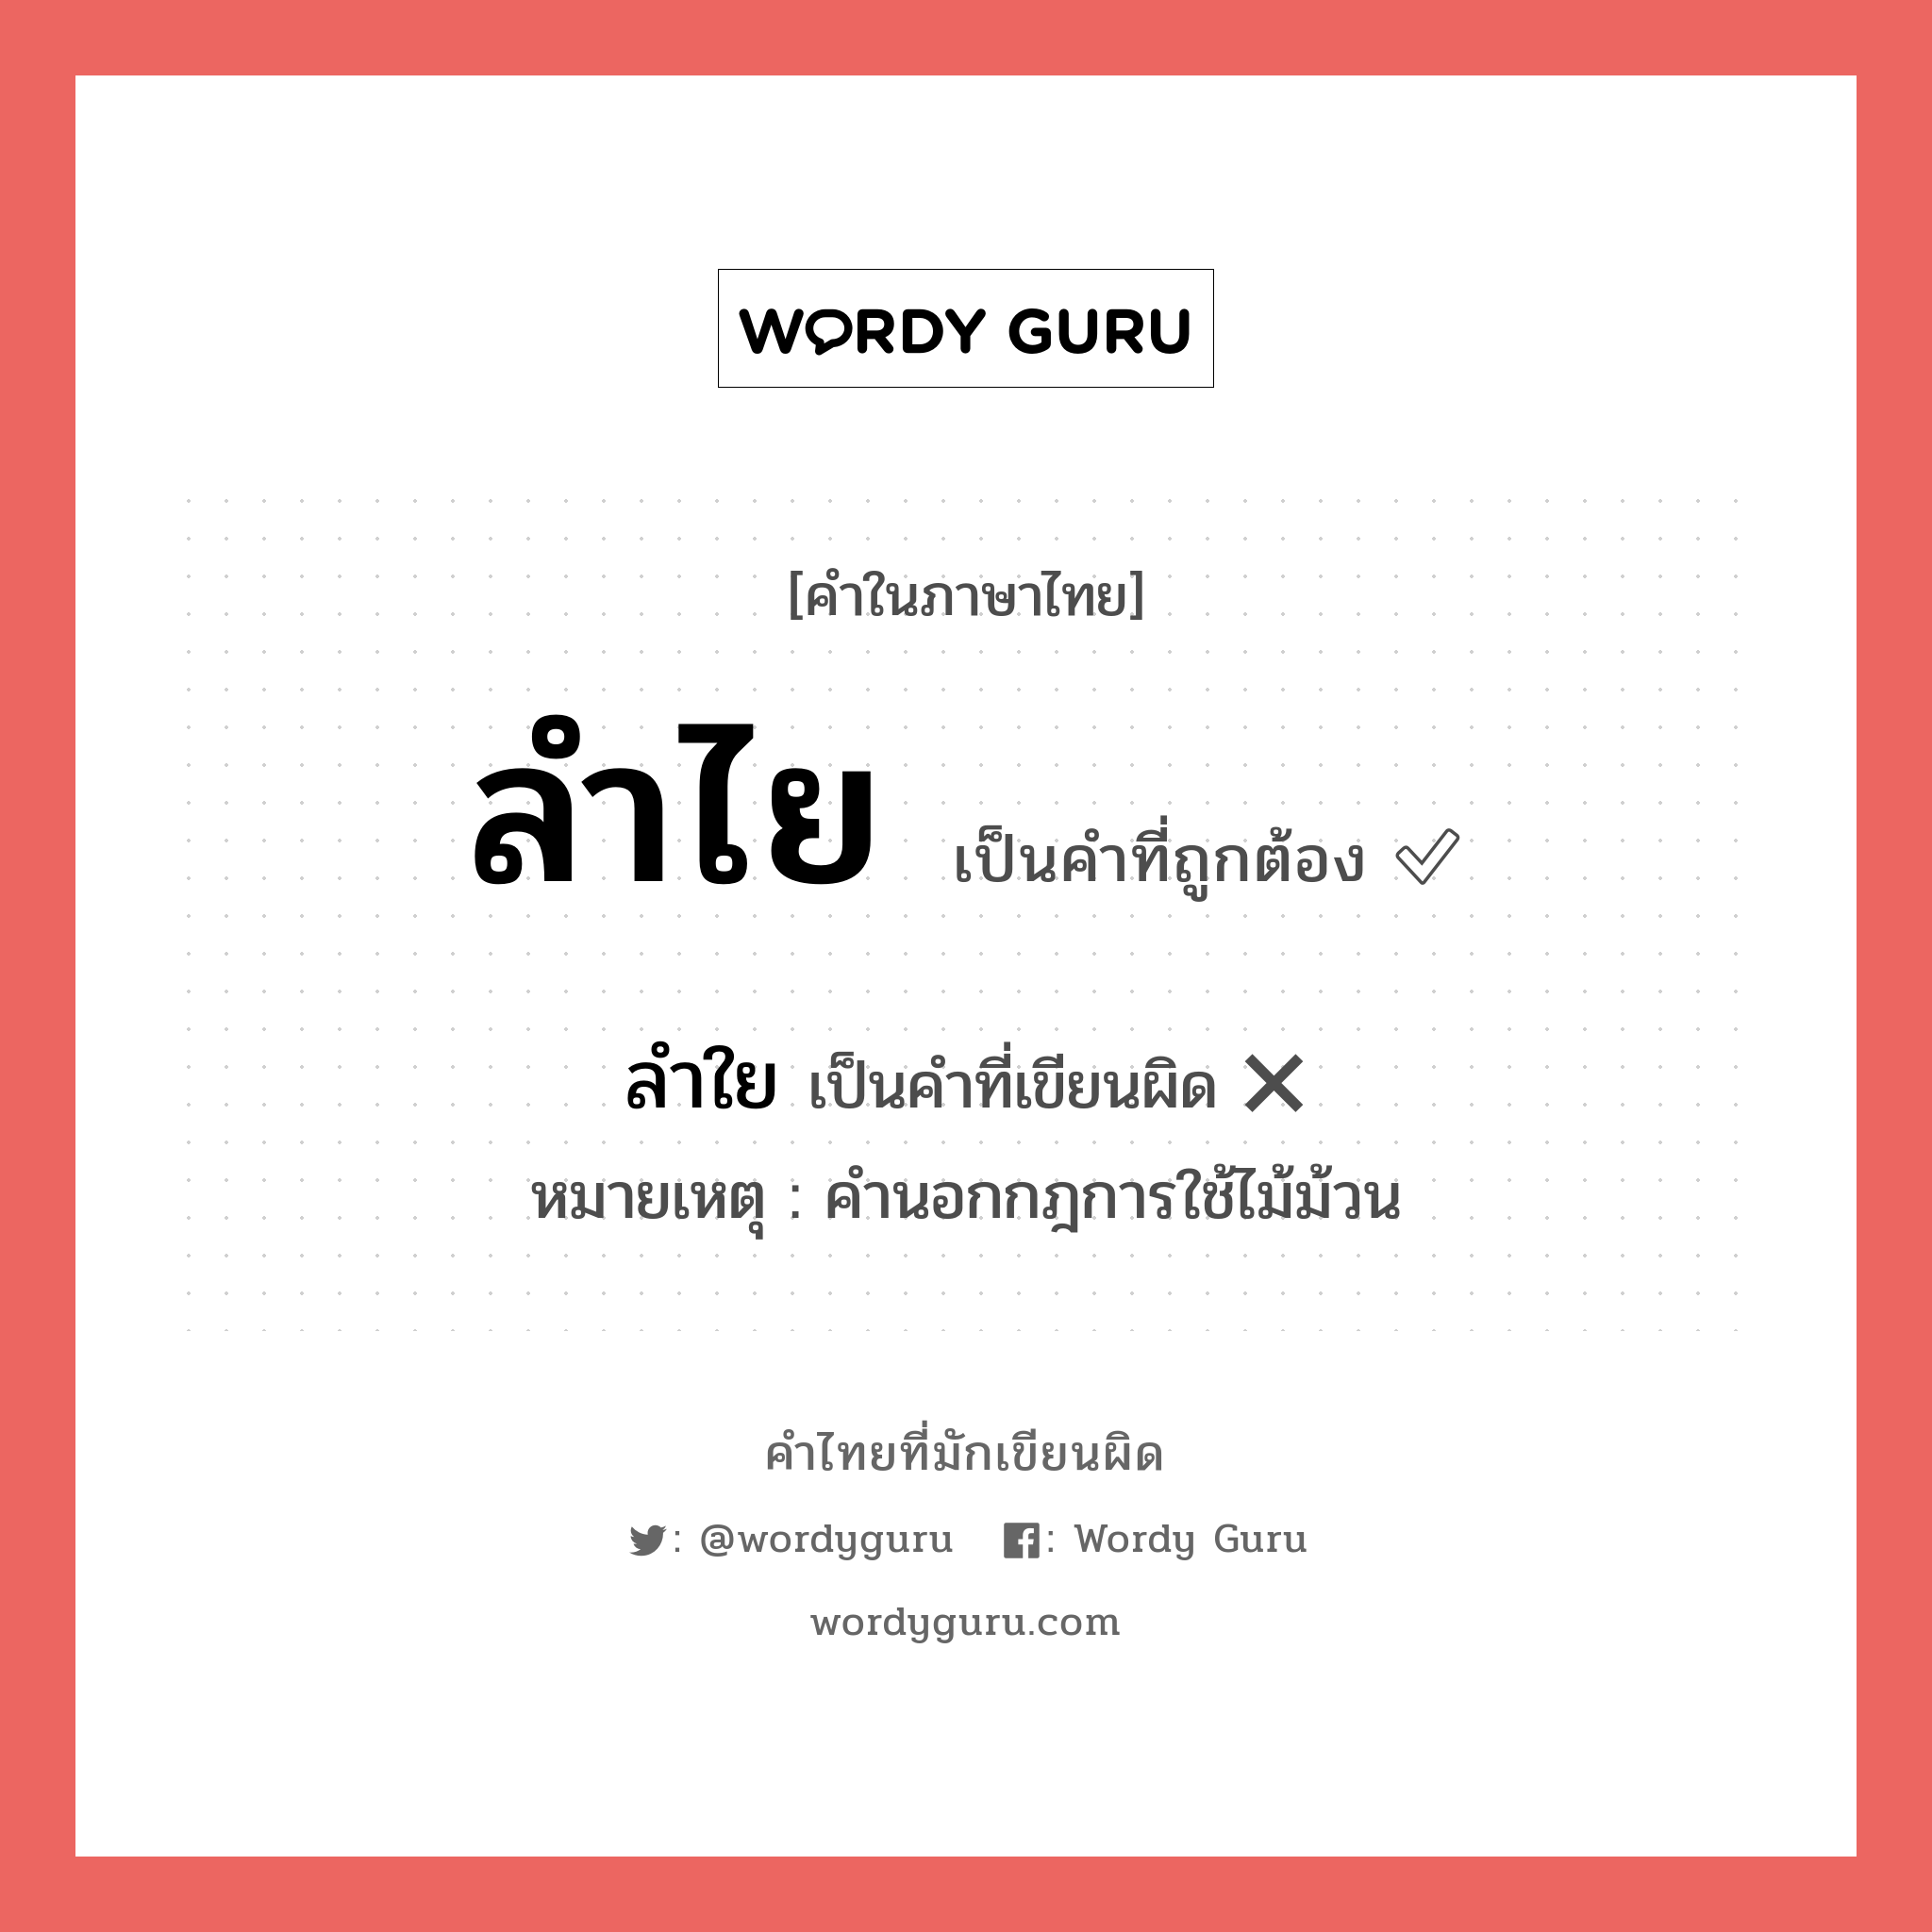 ลำใย หรือ ลำไย คำไหนเขียนถูก?, คำในภาษาไทยที่มักเขียนผิด ลำใย คำที่ผิด ❌ ลำไย หมายเหตุ คำนอกกฎการใช้ไม้ม้วน